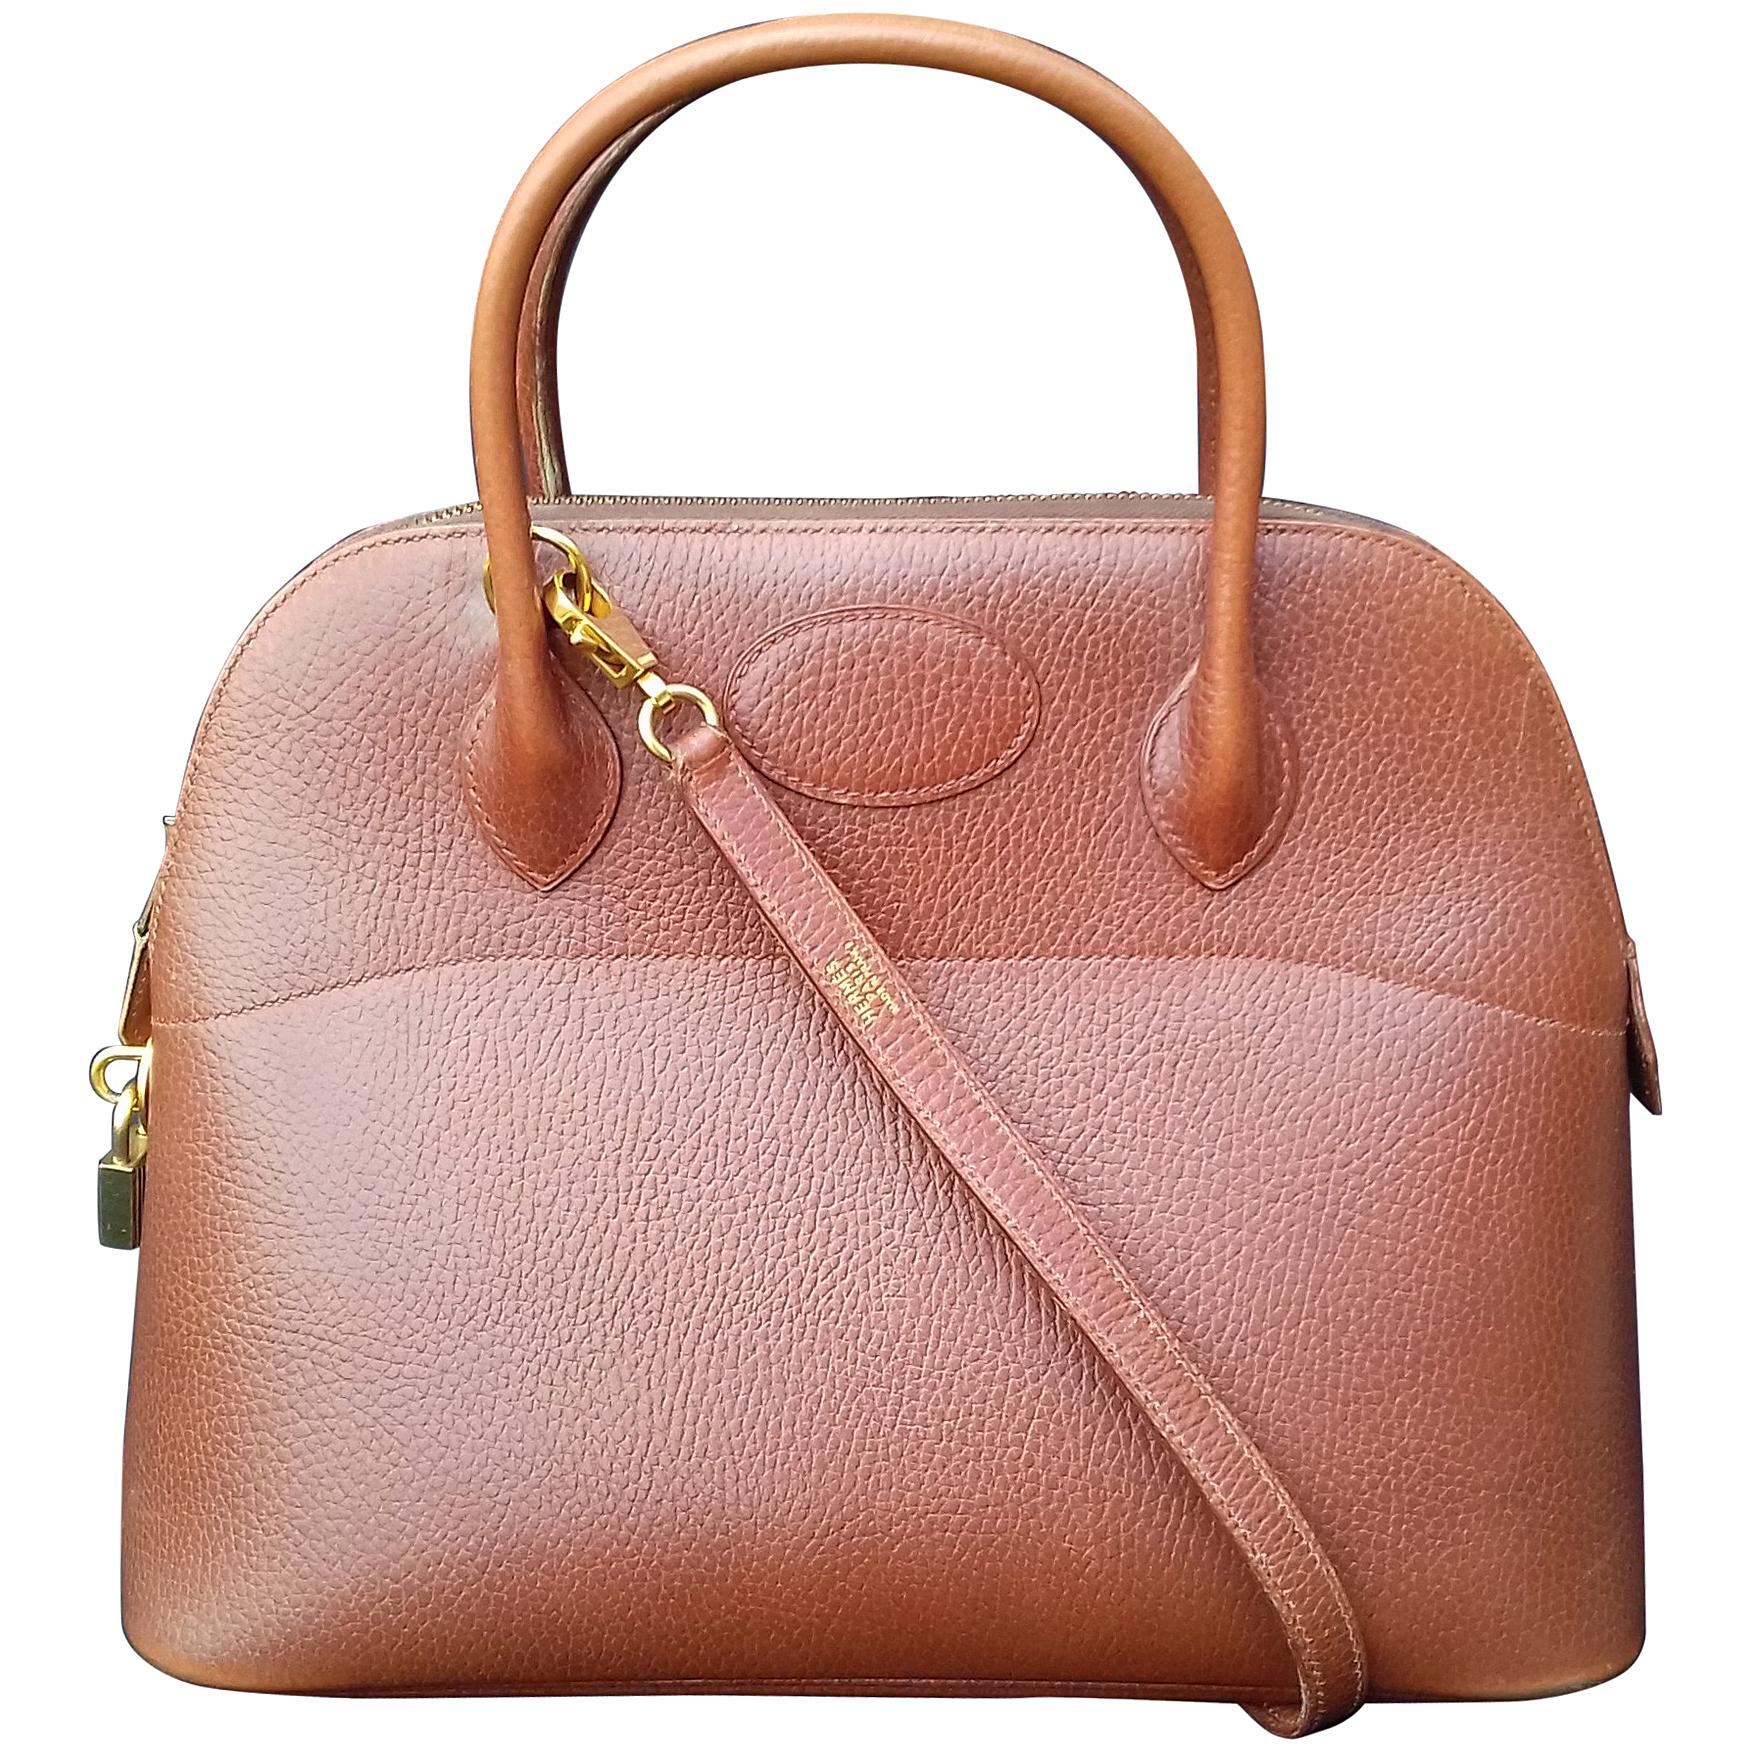 Hermès Vintage Bolide Bag 2 ways Brown Leather Golden Hdw 33 cm